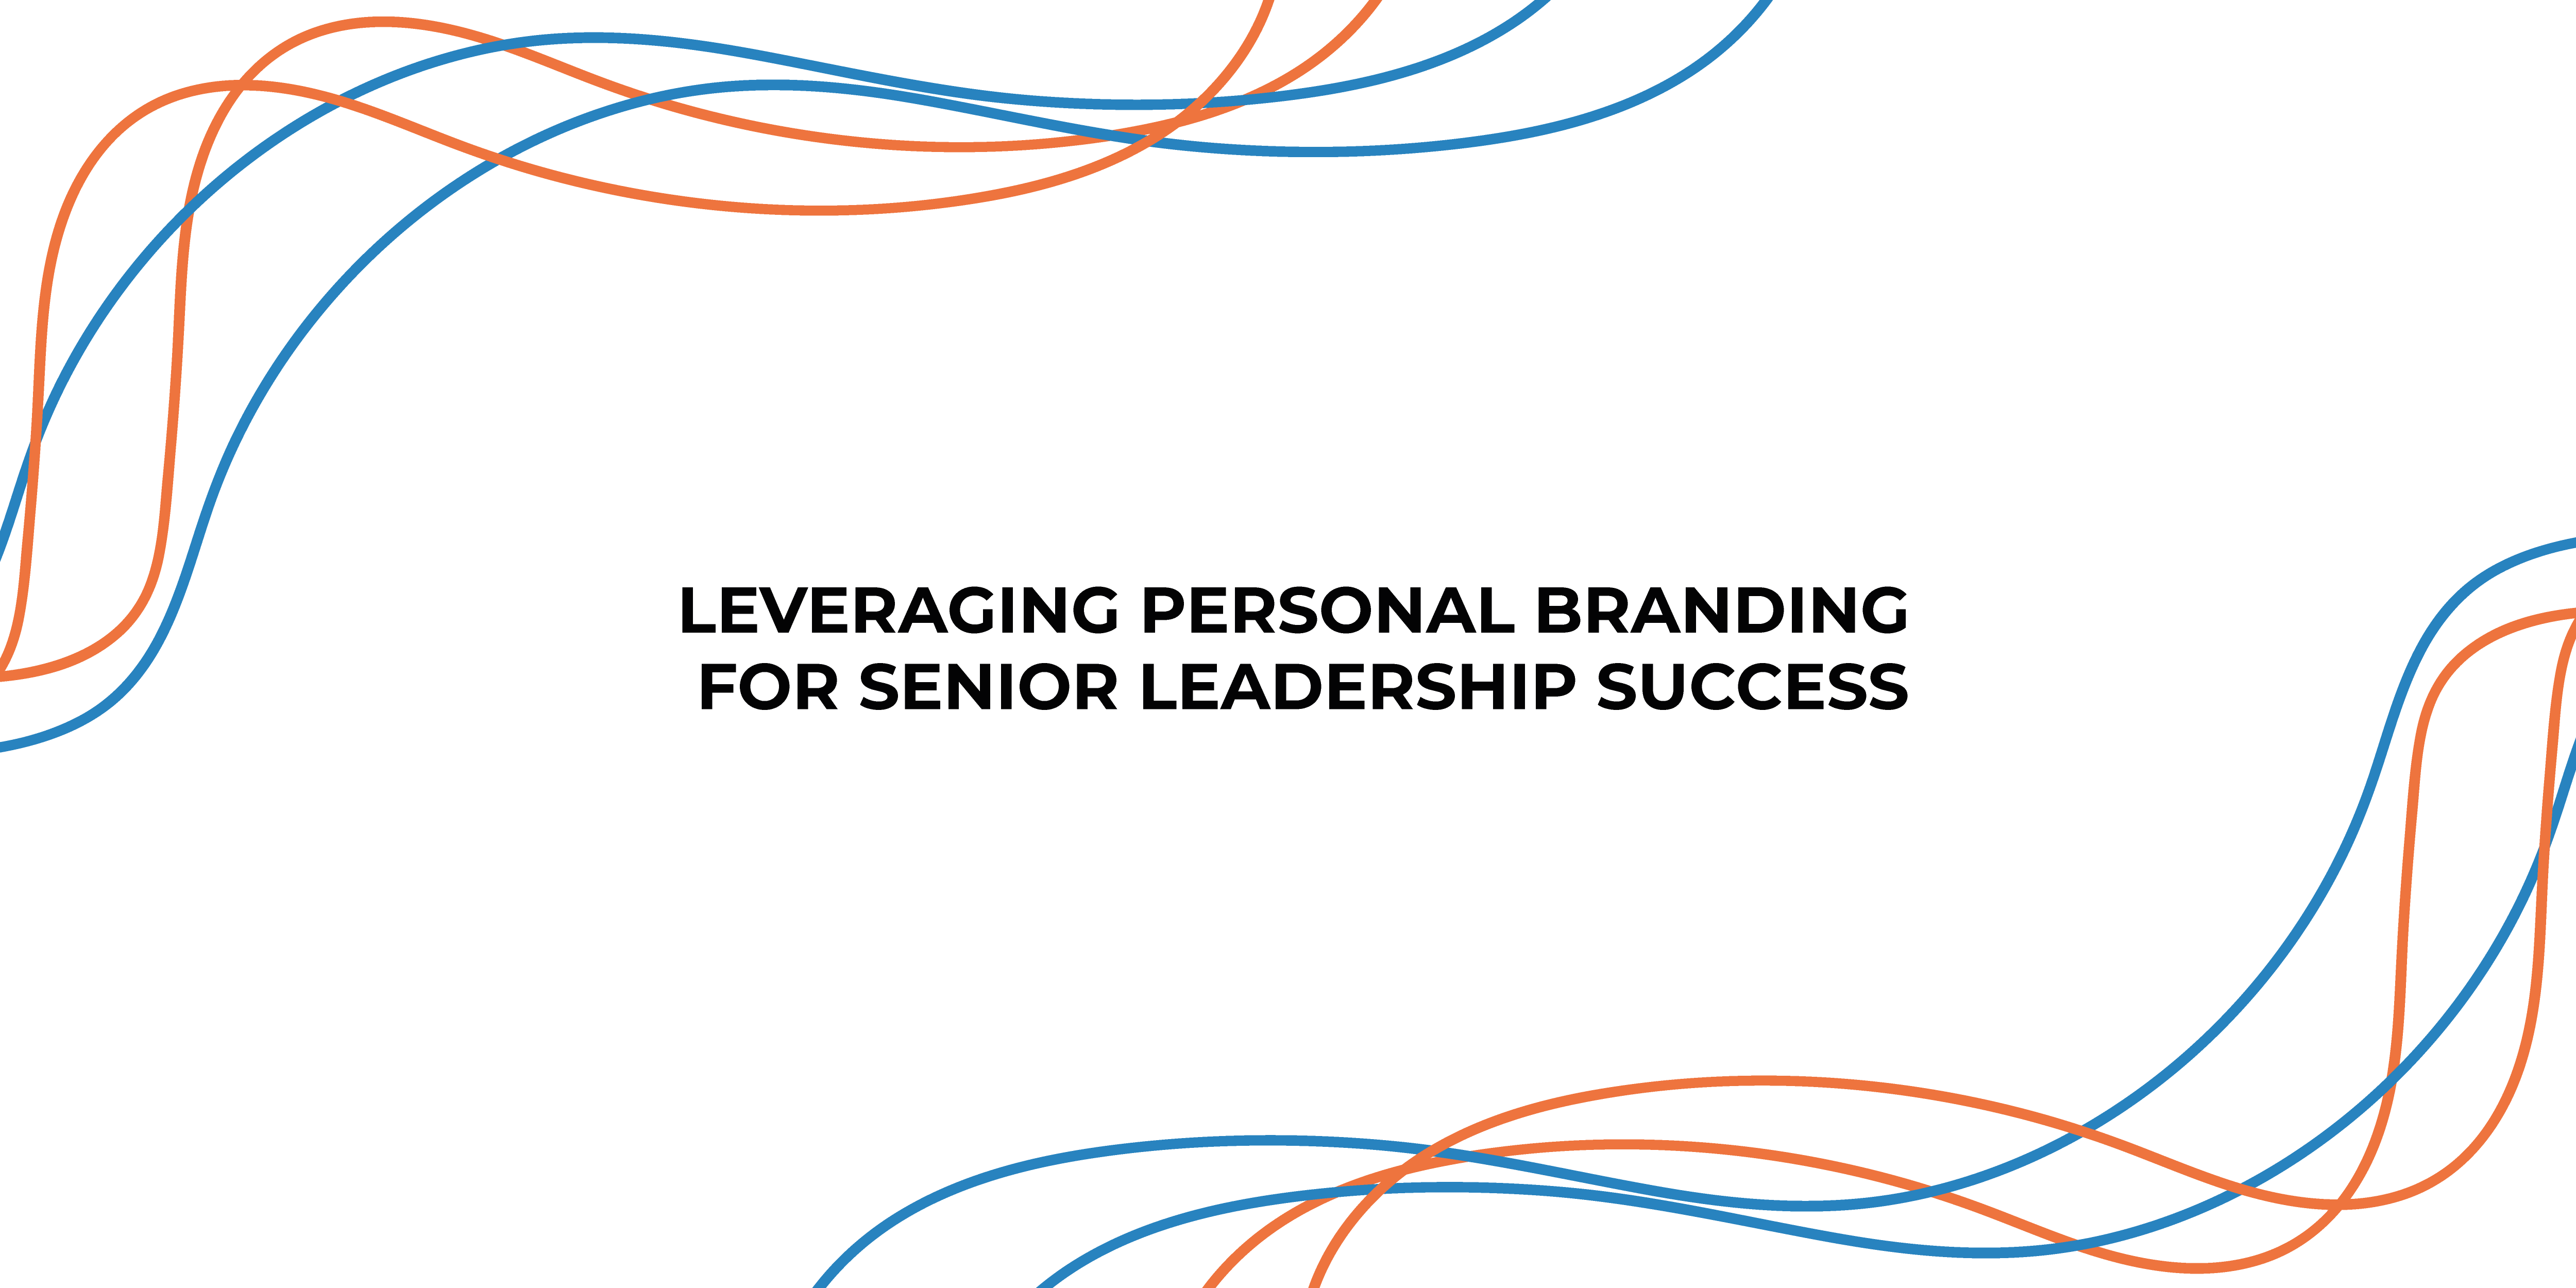 Leveraging Personal Branding for Senior Leadership Success on LinkedIn